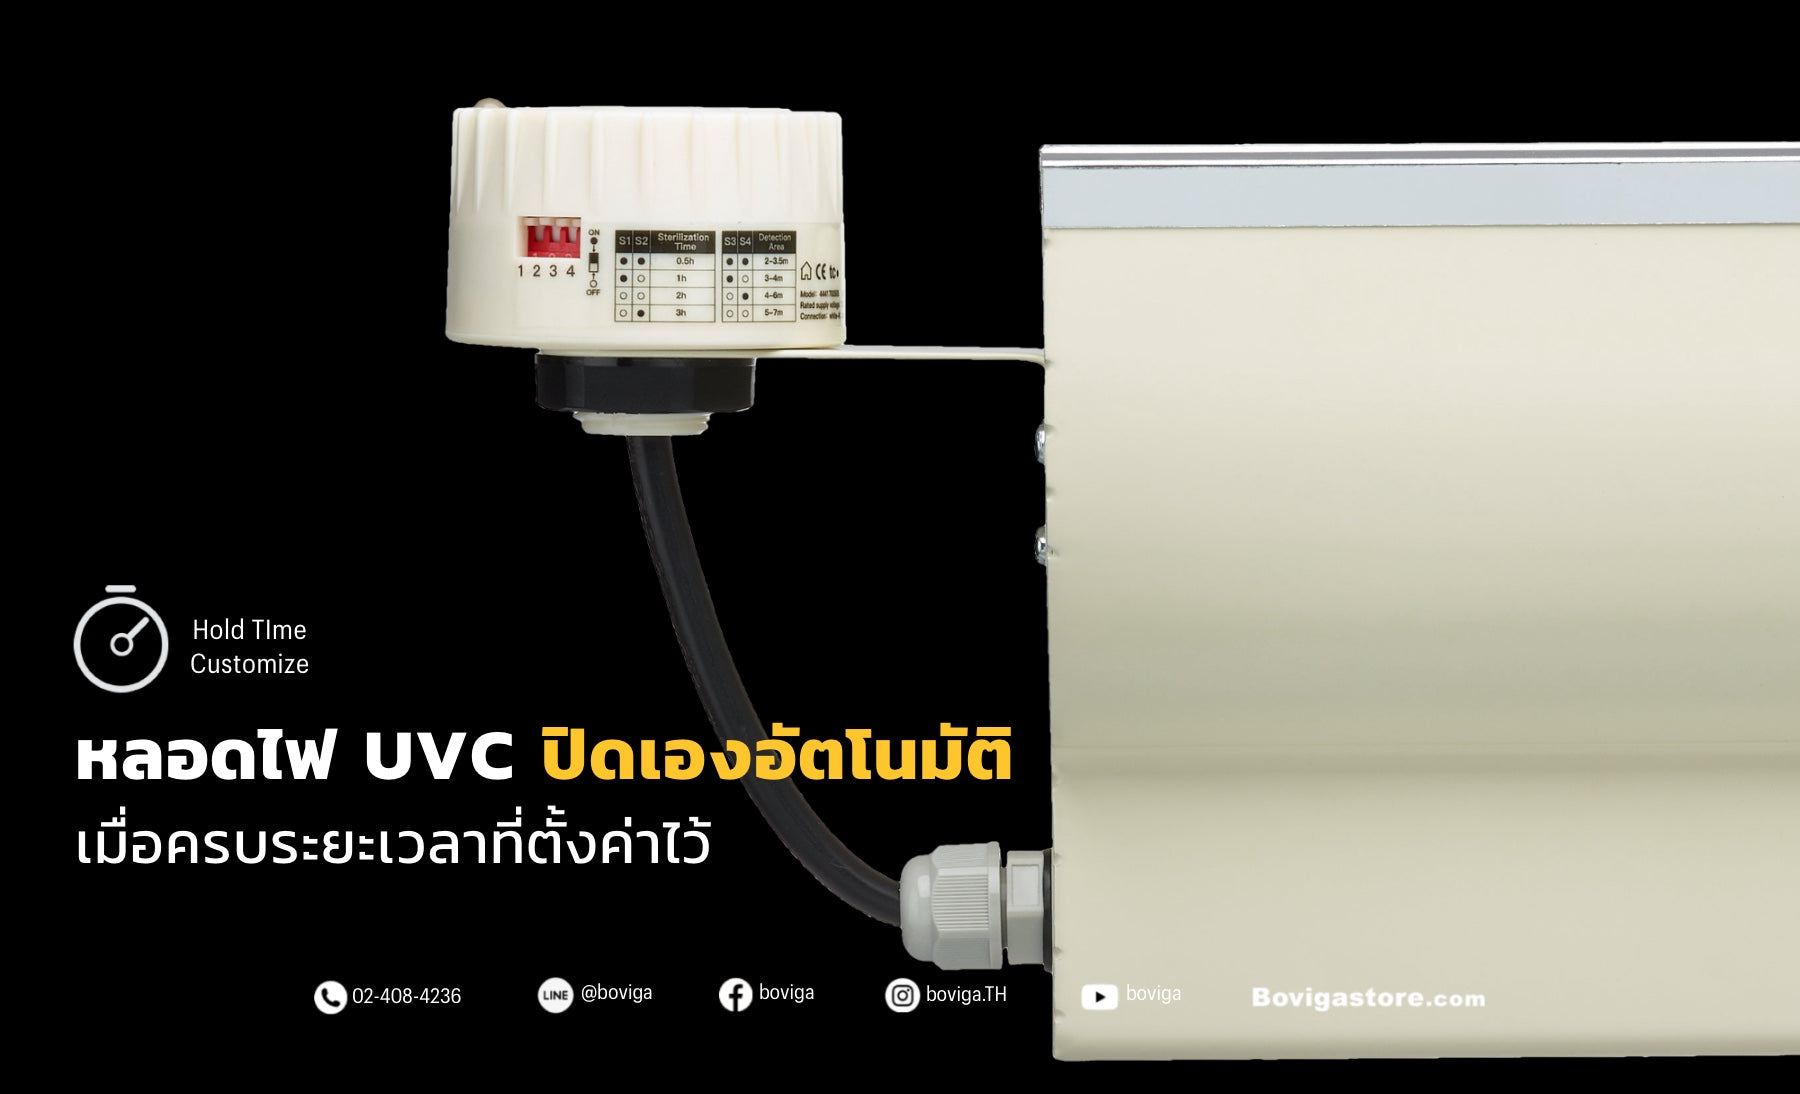 เซ็นเซอร์โคมไฟ UV-C Philips ฟิลิปส์ สามารถตั้งเวลาปิดหลอดไฟ uvc อัตโนมัติ พร้อมไฟแสดงสถานะการทำงาน